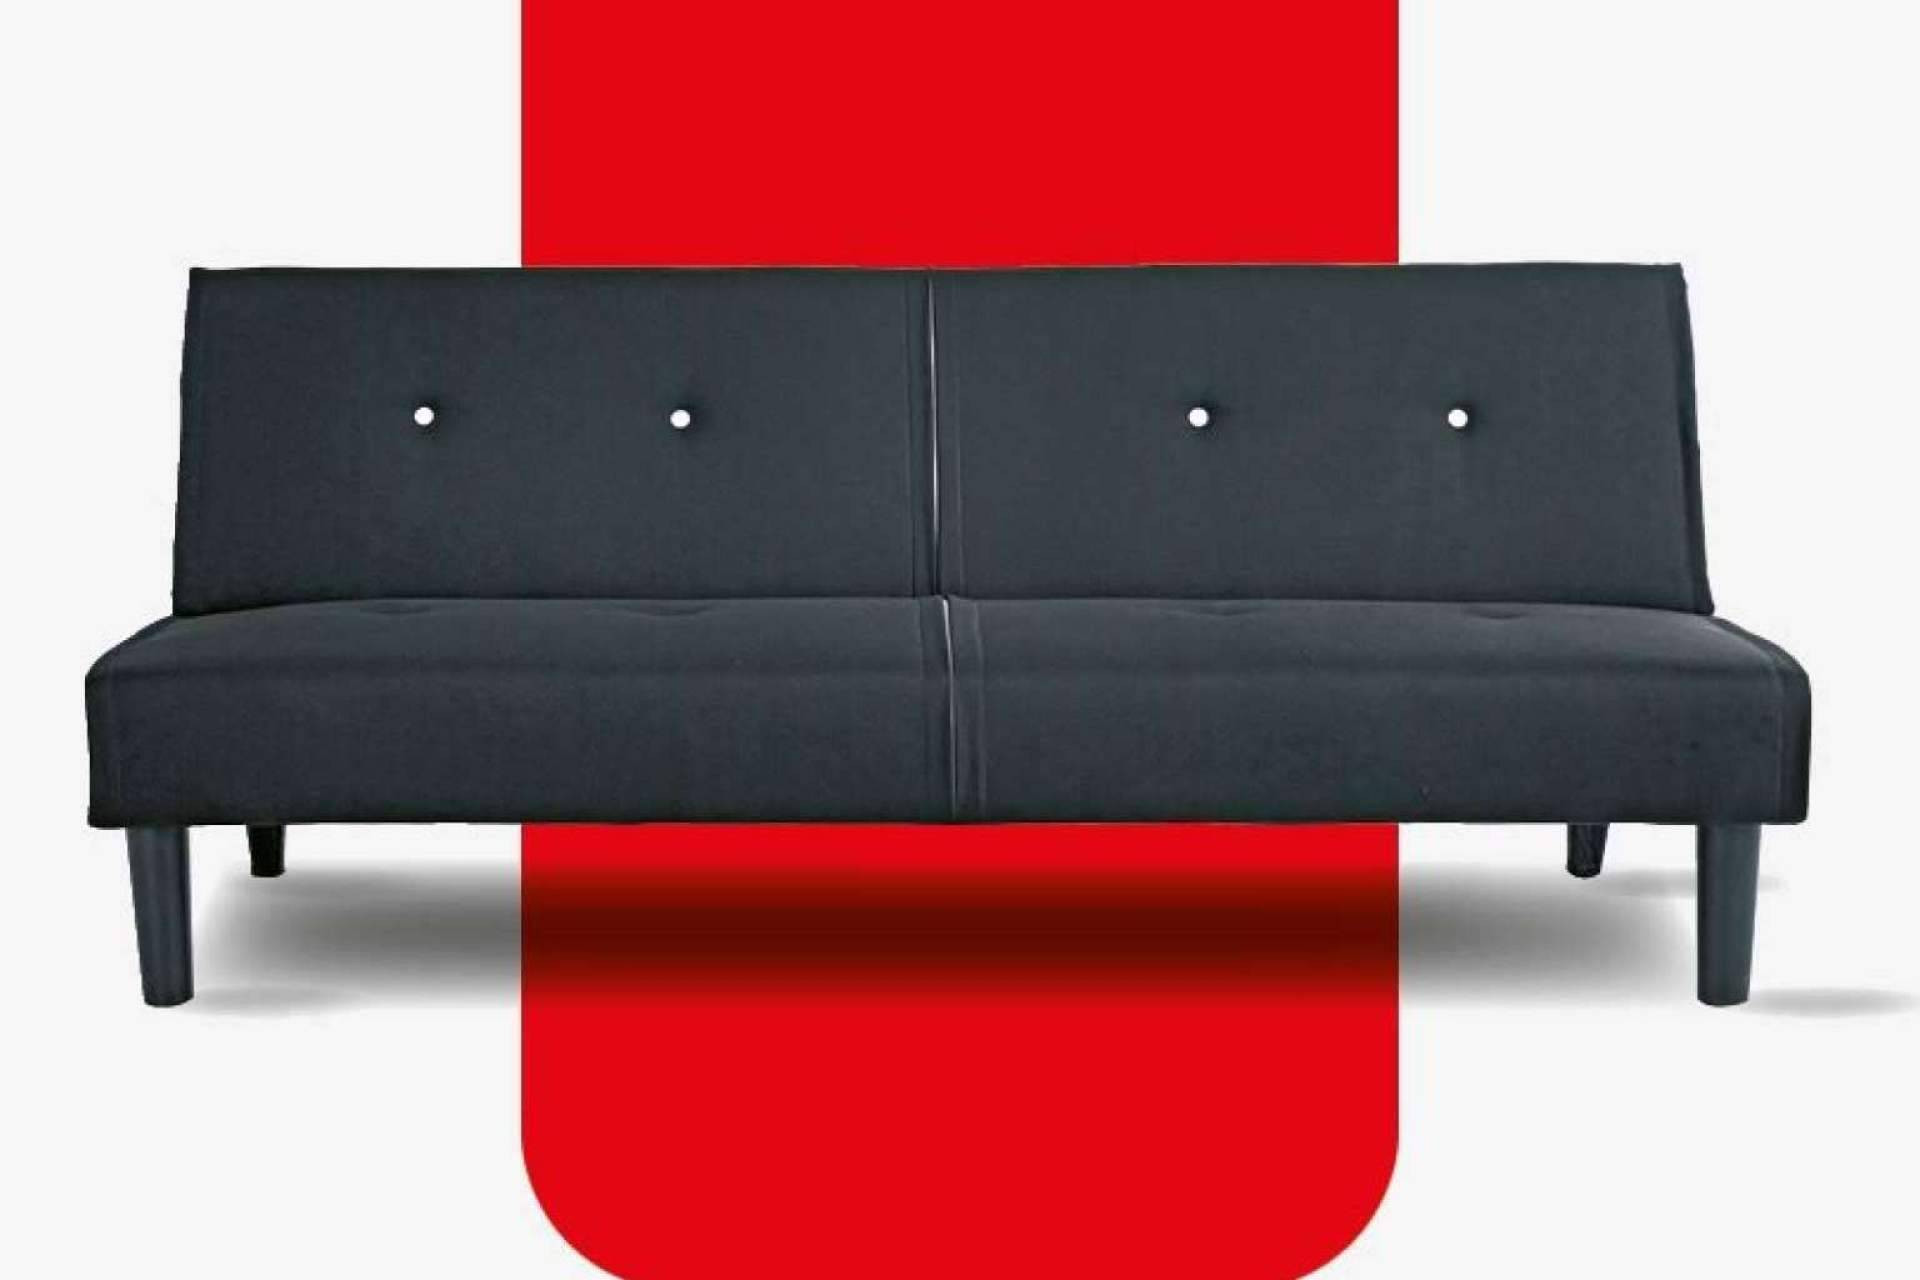  Variedad de sofás cama a buenos precios y de alta calidad, en Conforama 